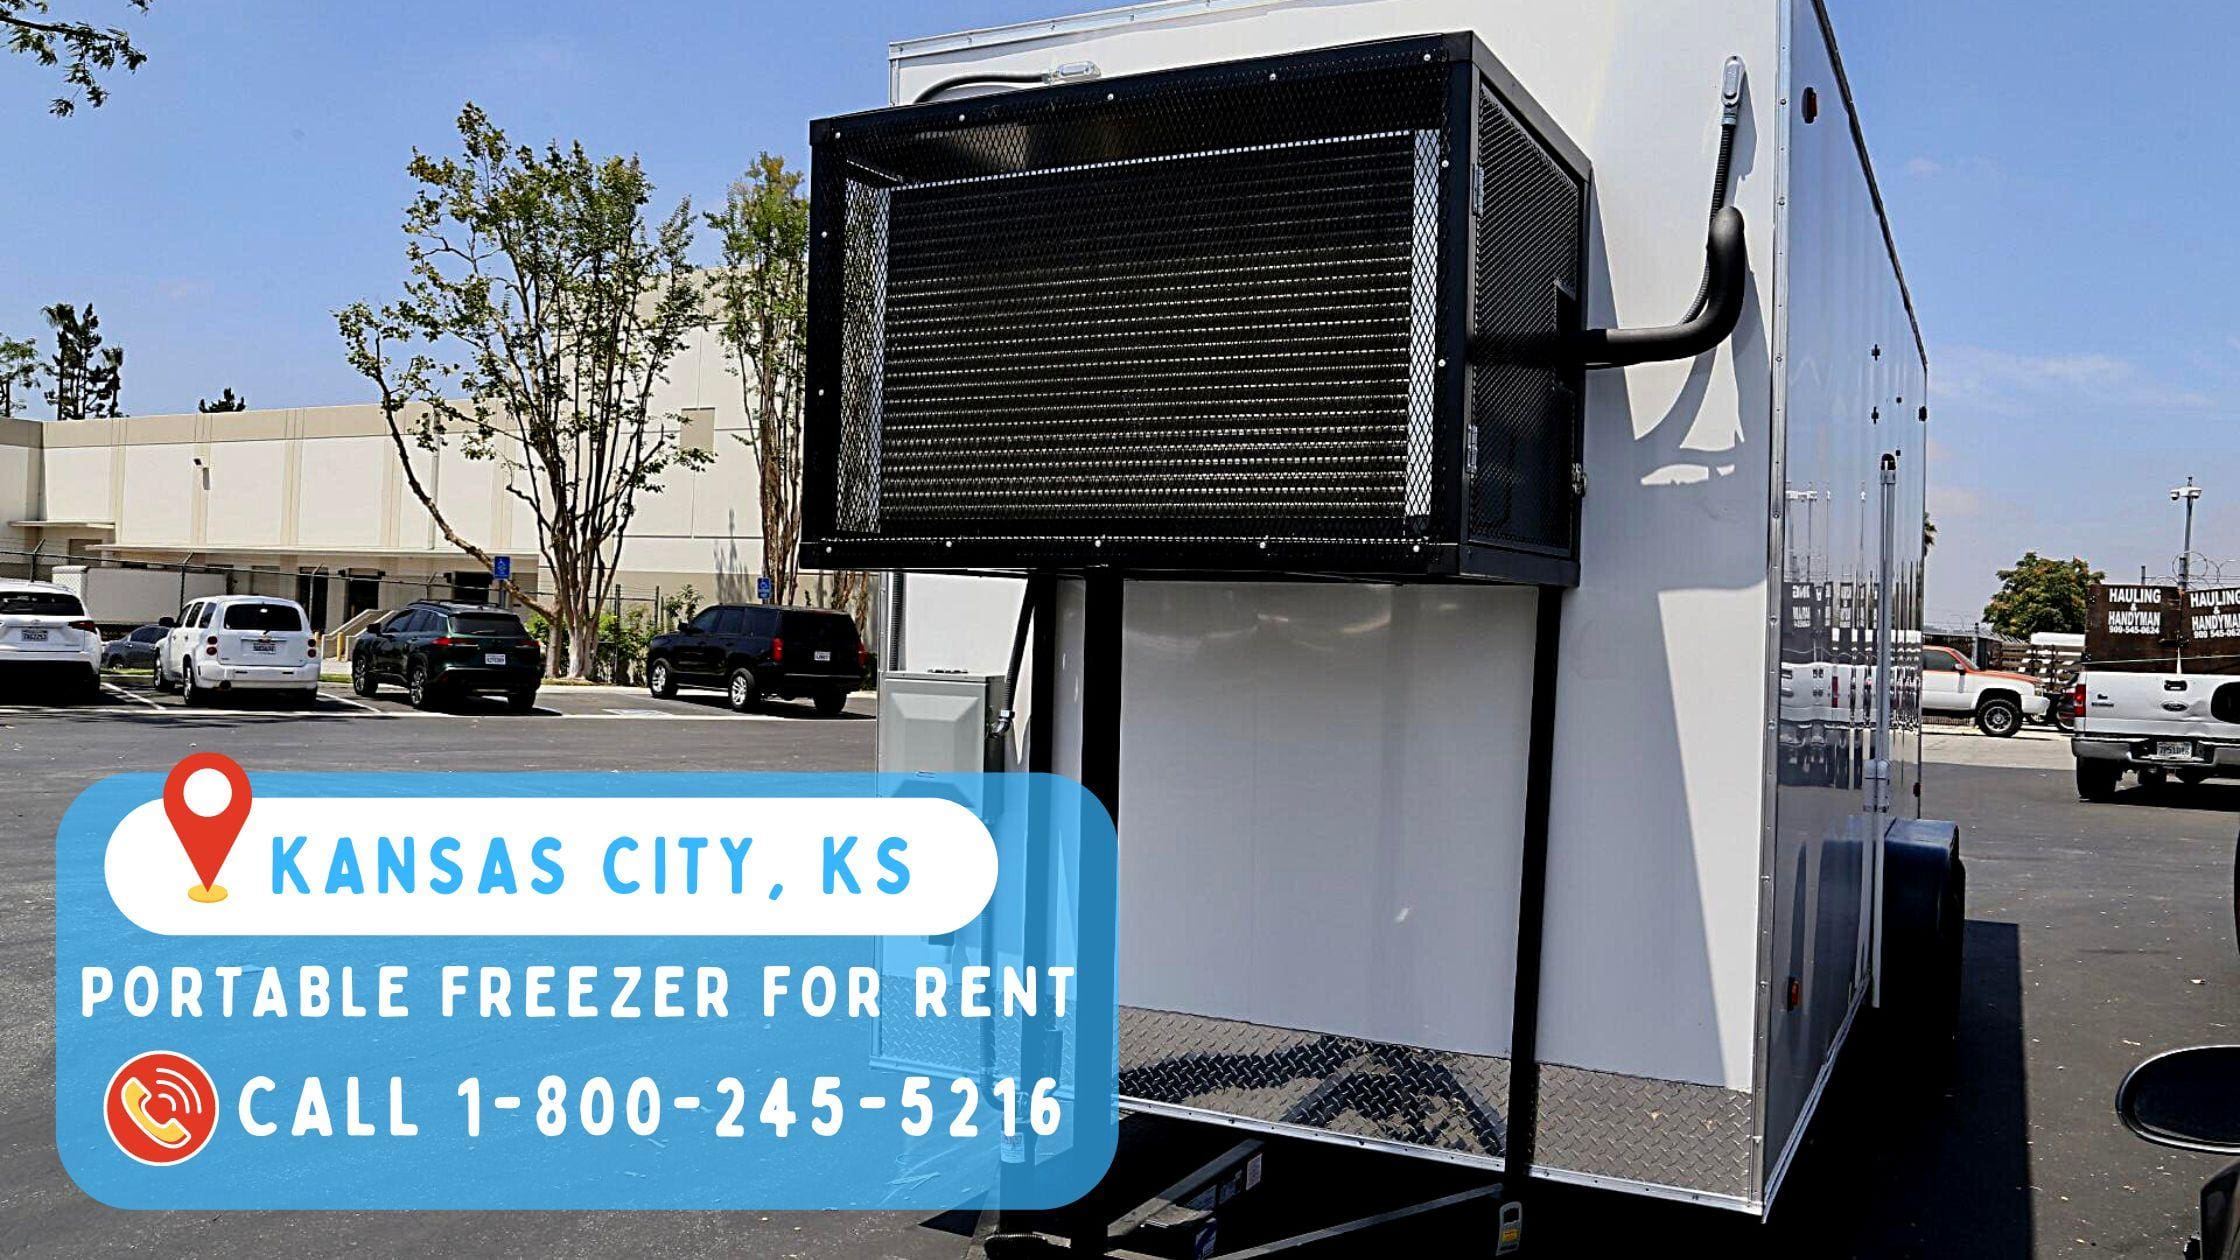 Portable freezer for rent in Kansas City, KS